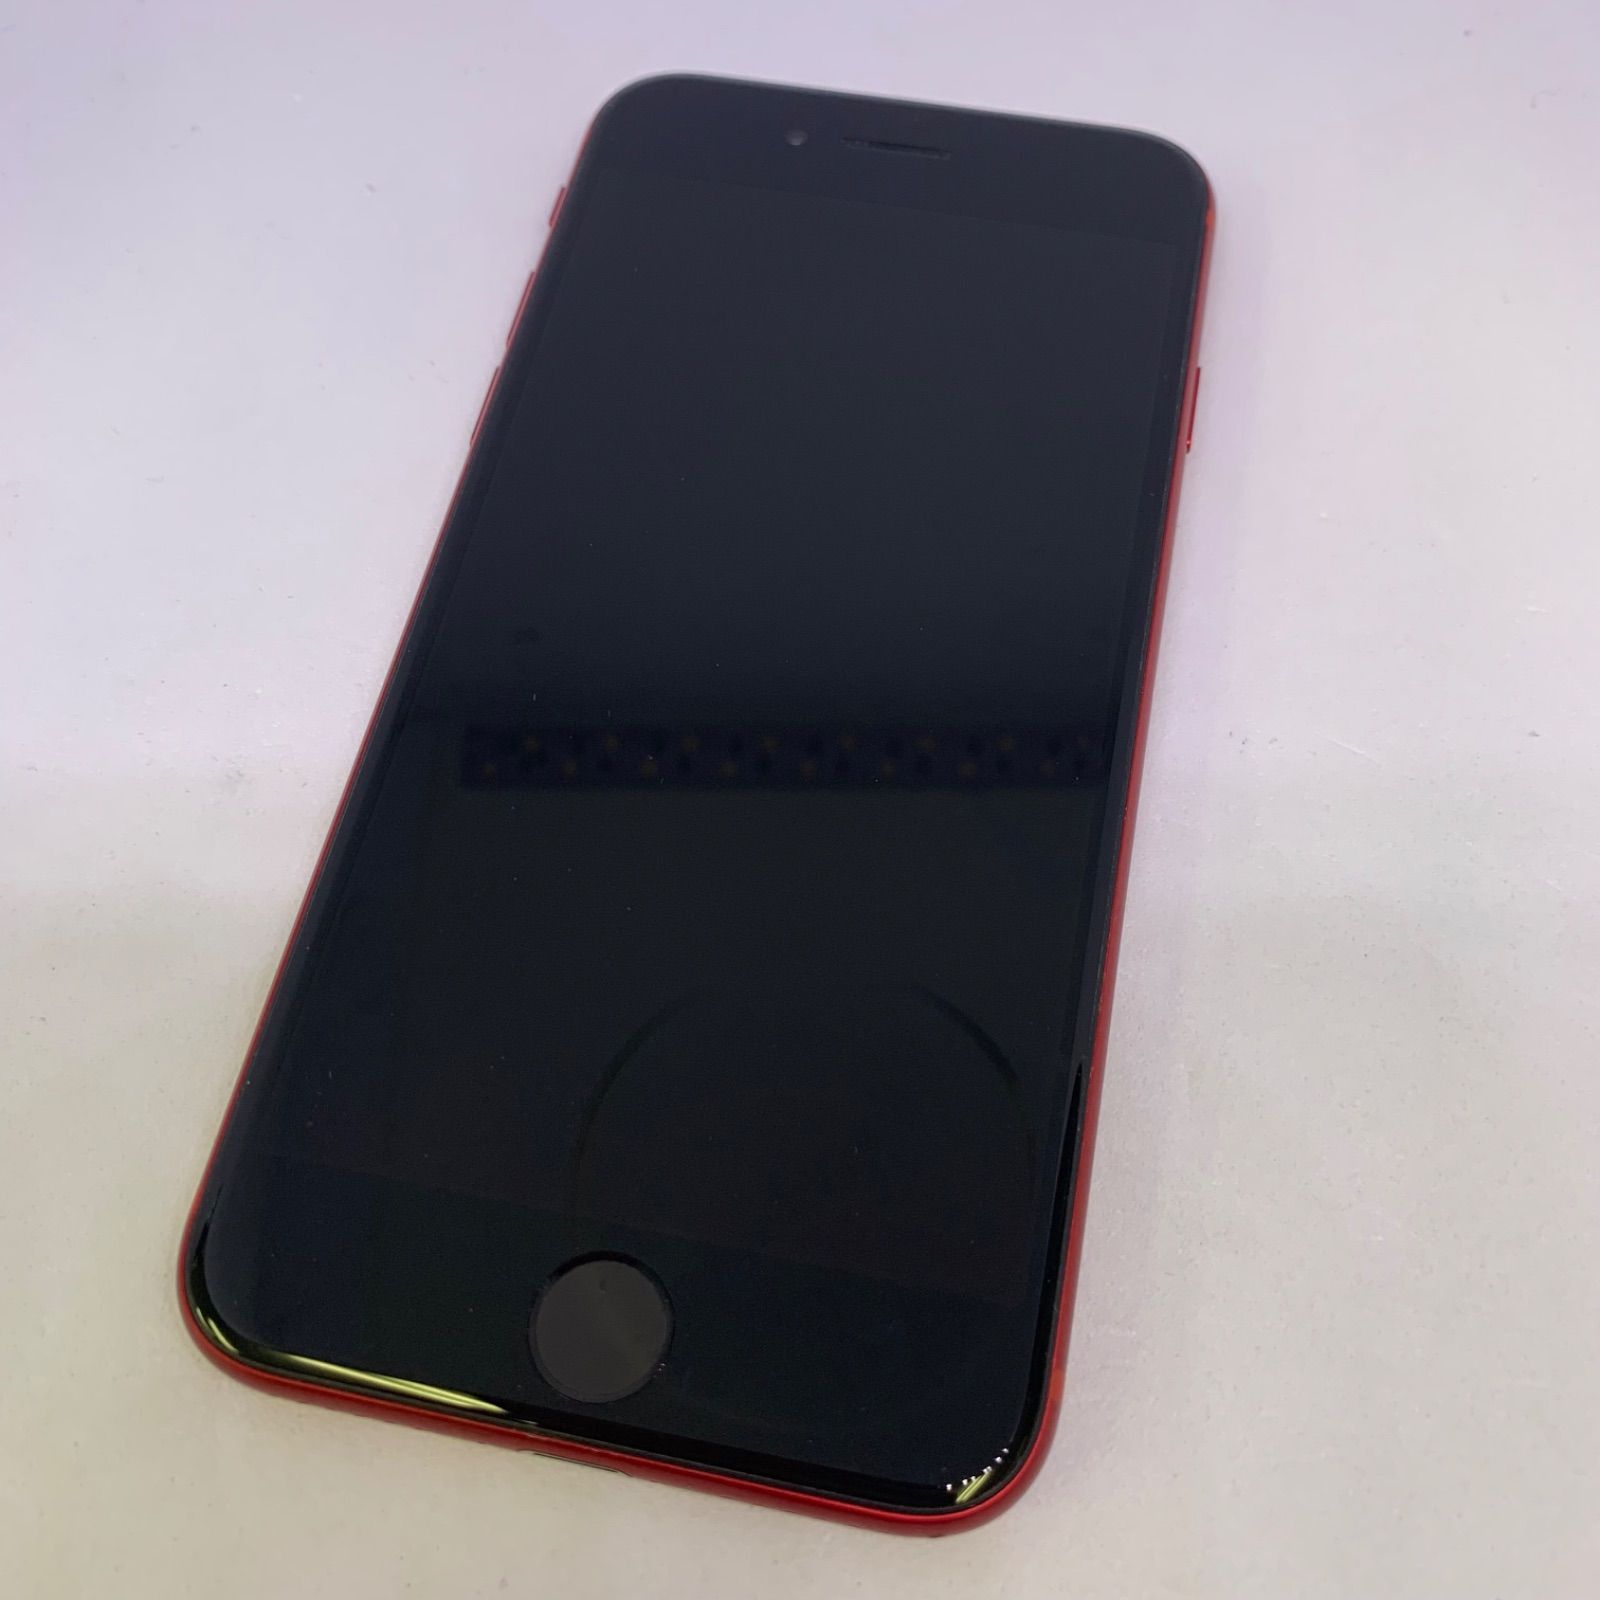 ★【美品】docomo iPhone SE (第2世代) 64GB レッド